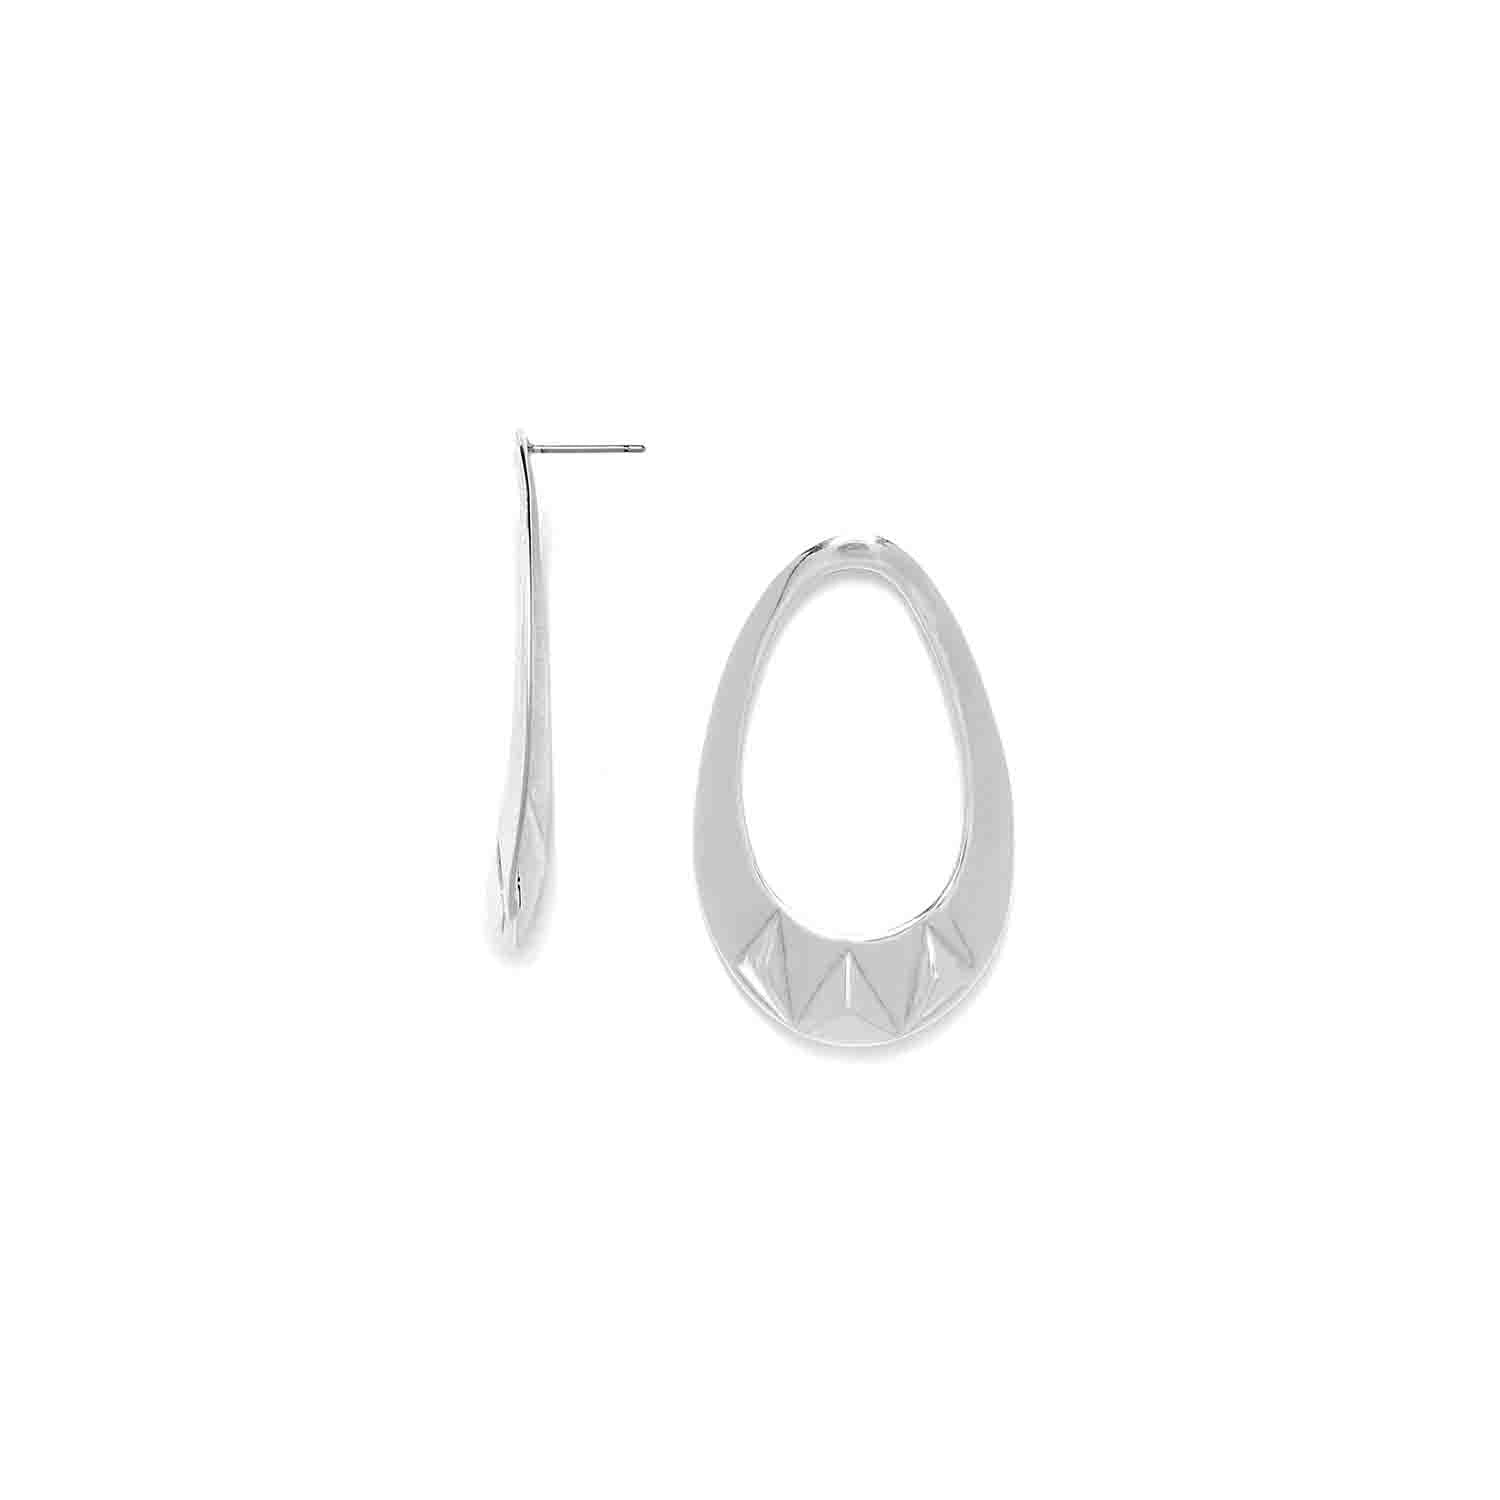 Ori Tao Drop Earrings / Brass, Silver Patina / Stylish Jewelry / Rokia - 0